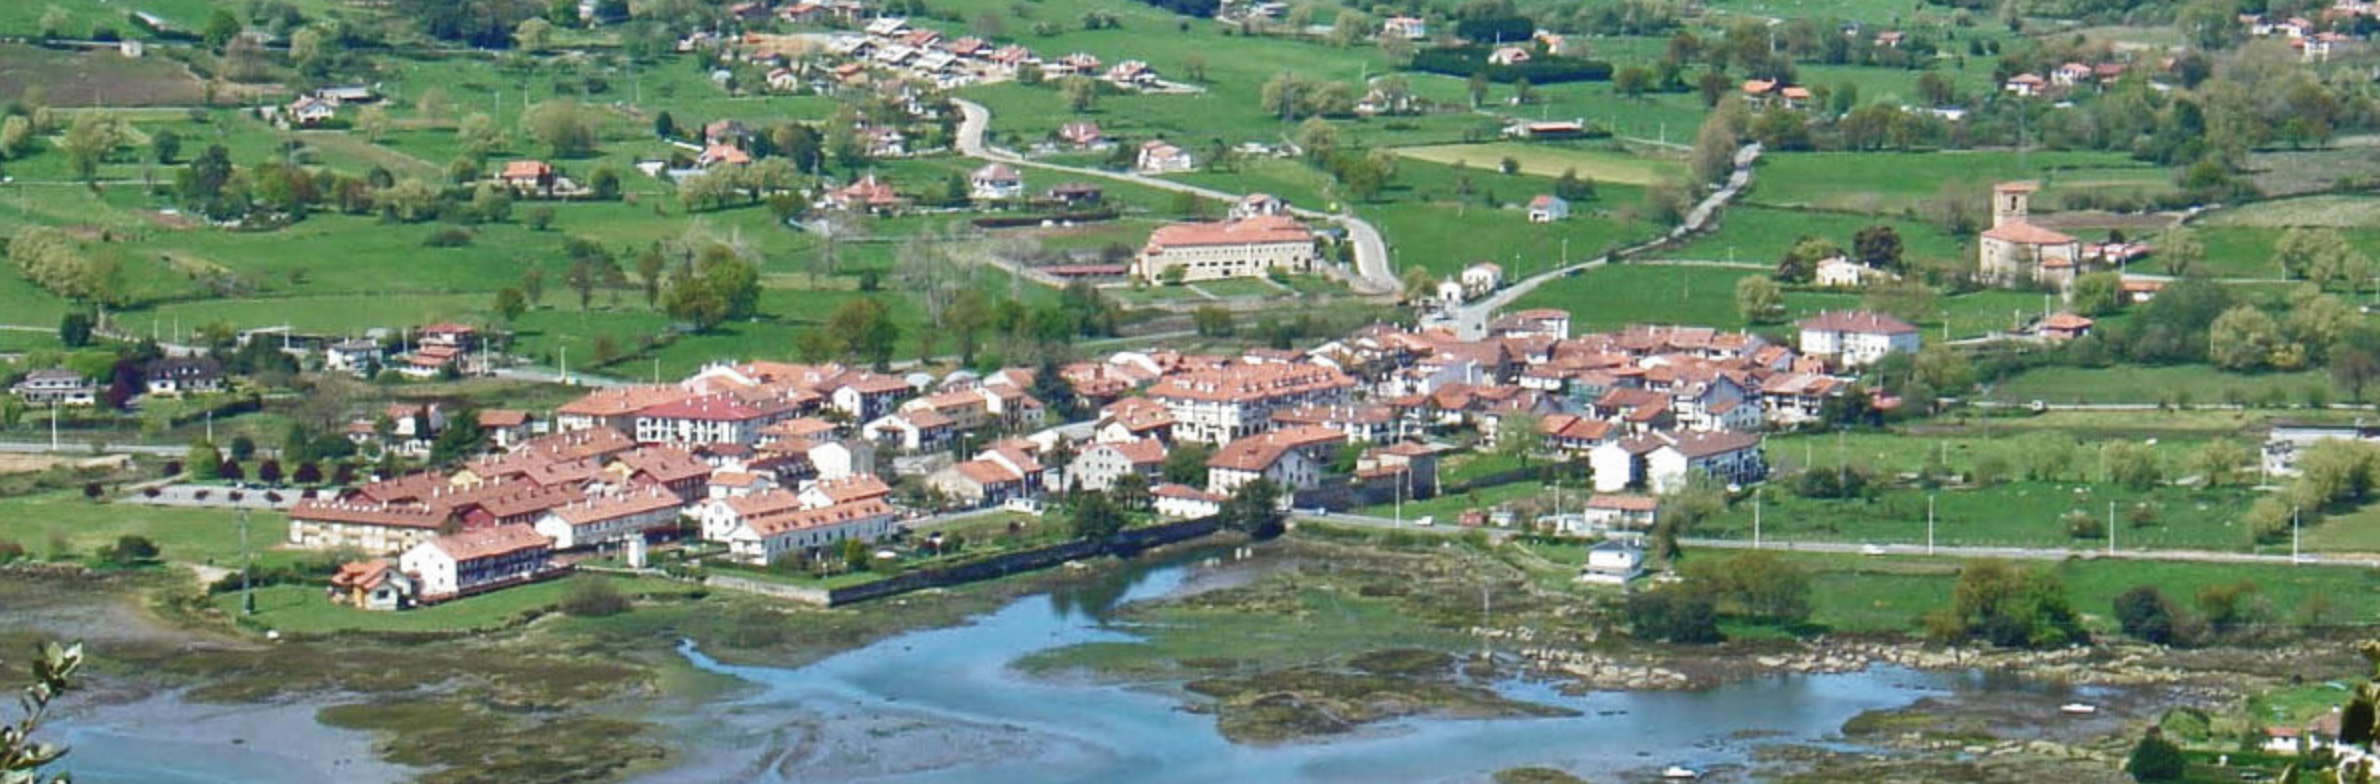 Escalante. @Turismo Cantabria.